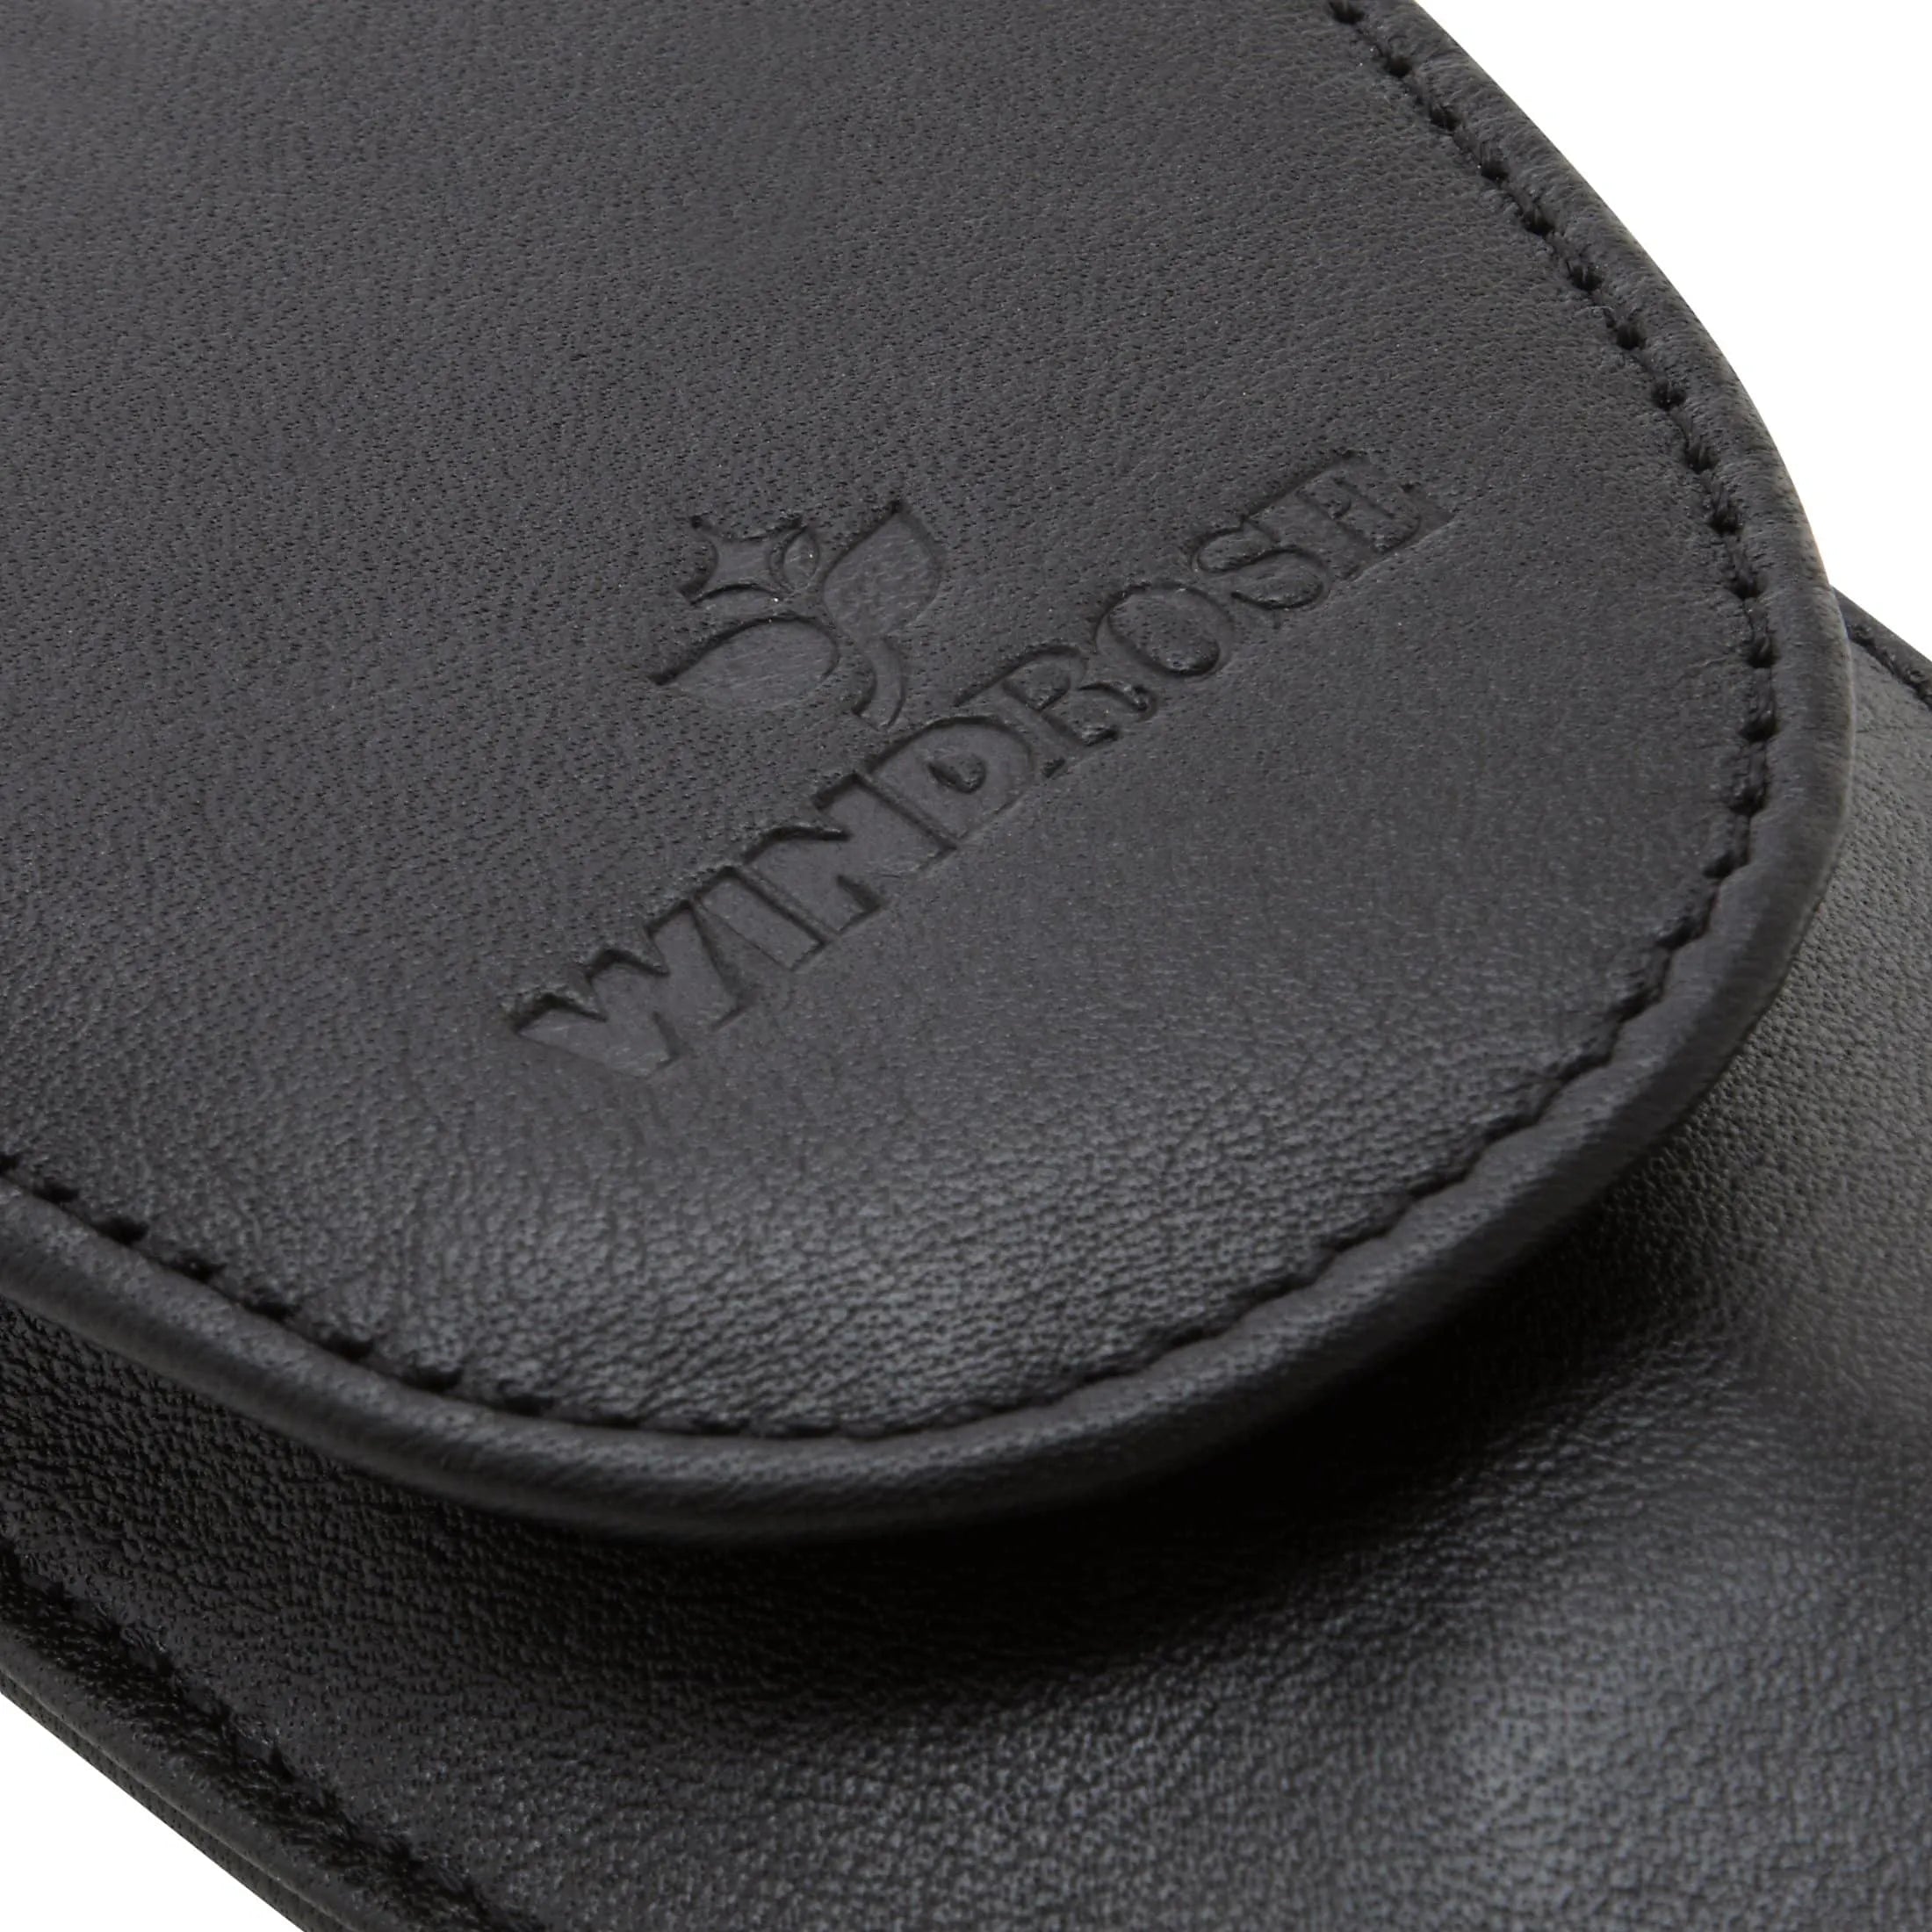 Windrose Nappa Taschenmanicure 10 cm - schwarz